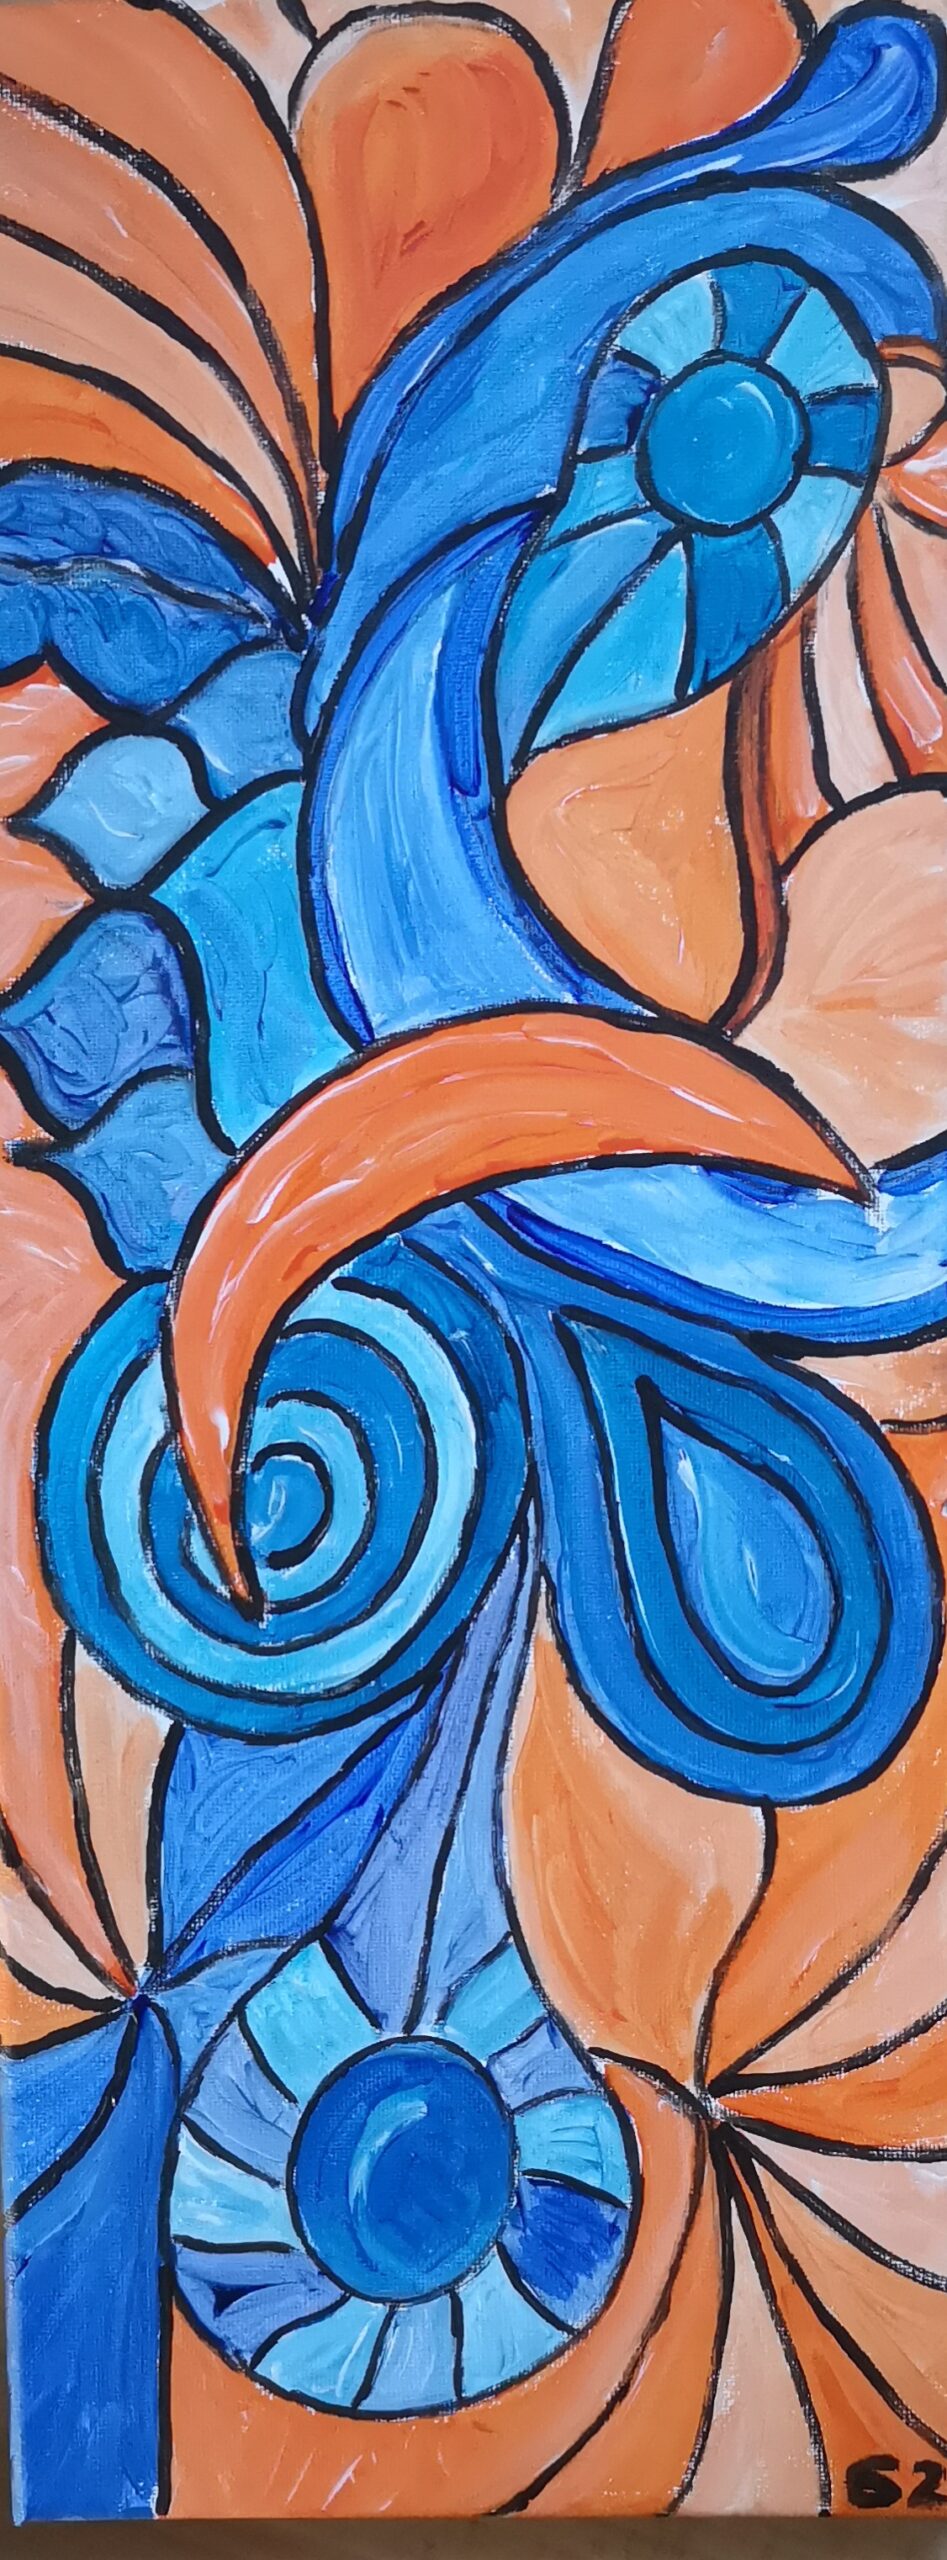 Bild eines ineinanderverflochtenen Musters aus orange und blau